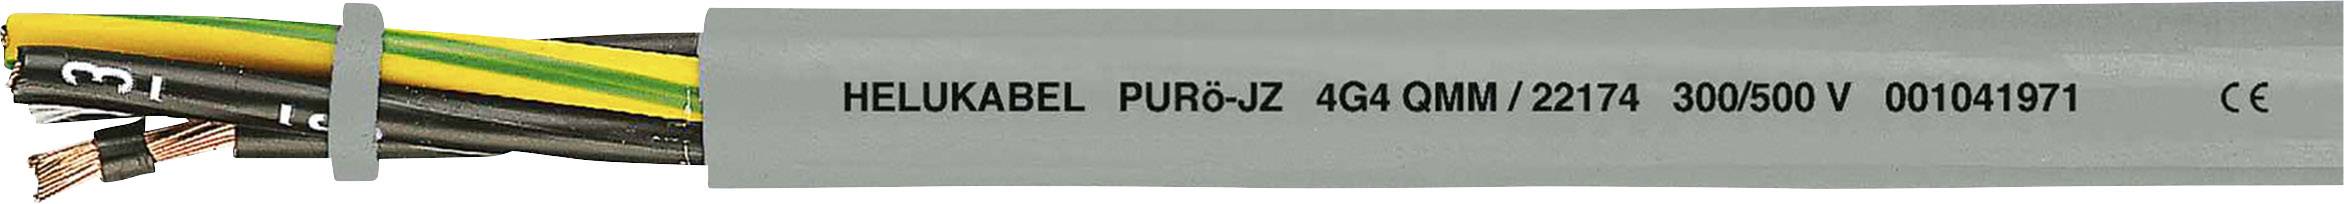 HELUKABEL PURö-JZ Steuerleitung 7 G 0.50 mm² Grau 22104 100 m